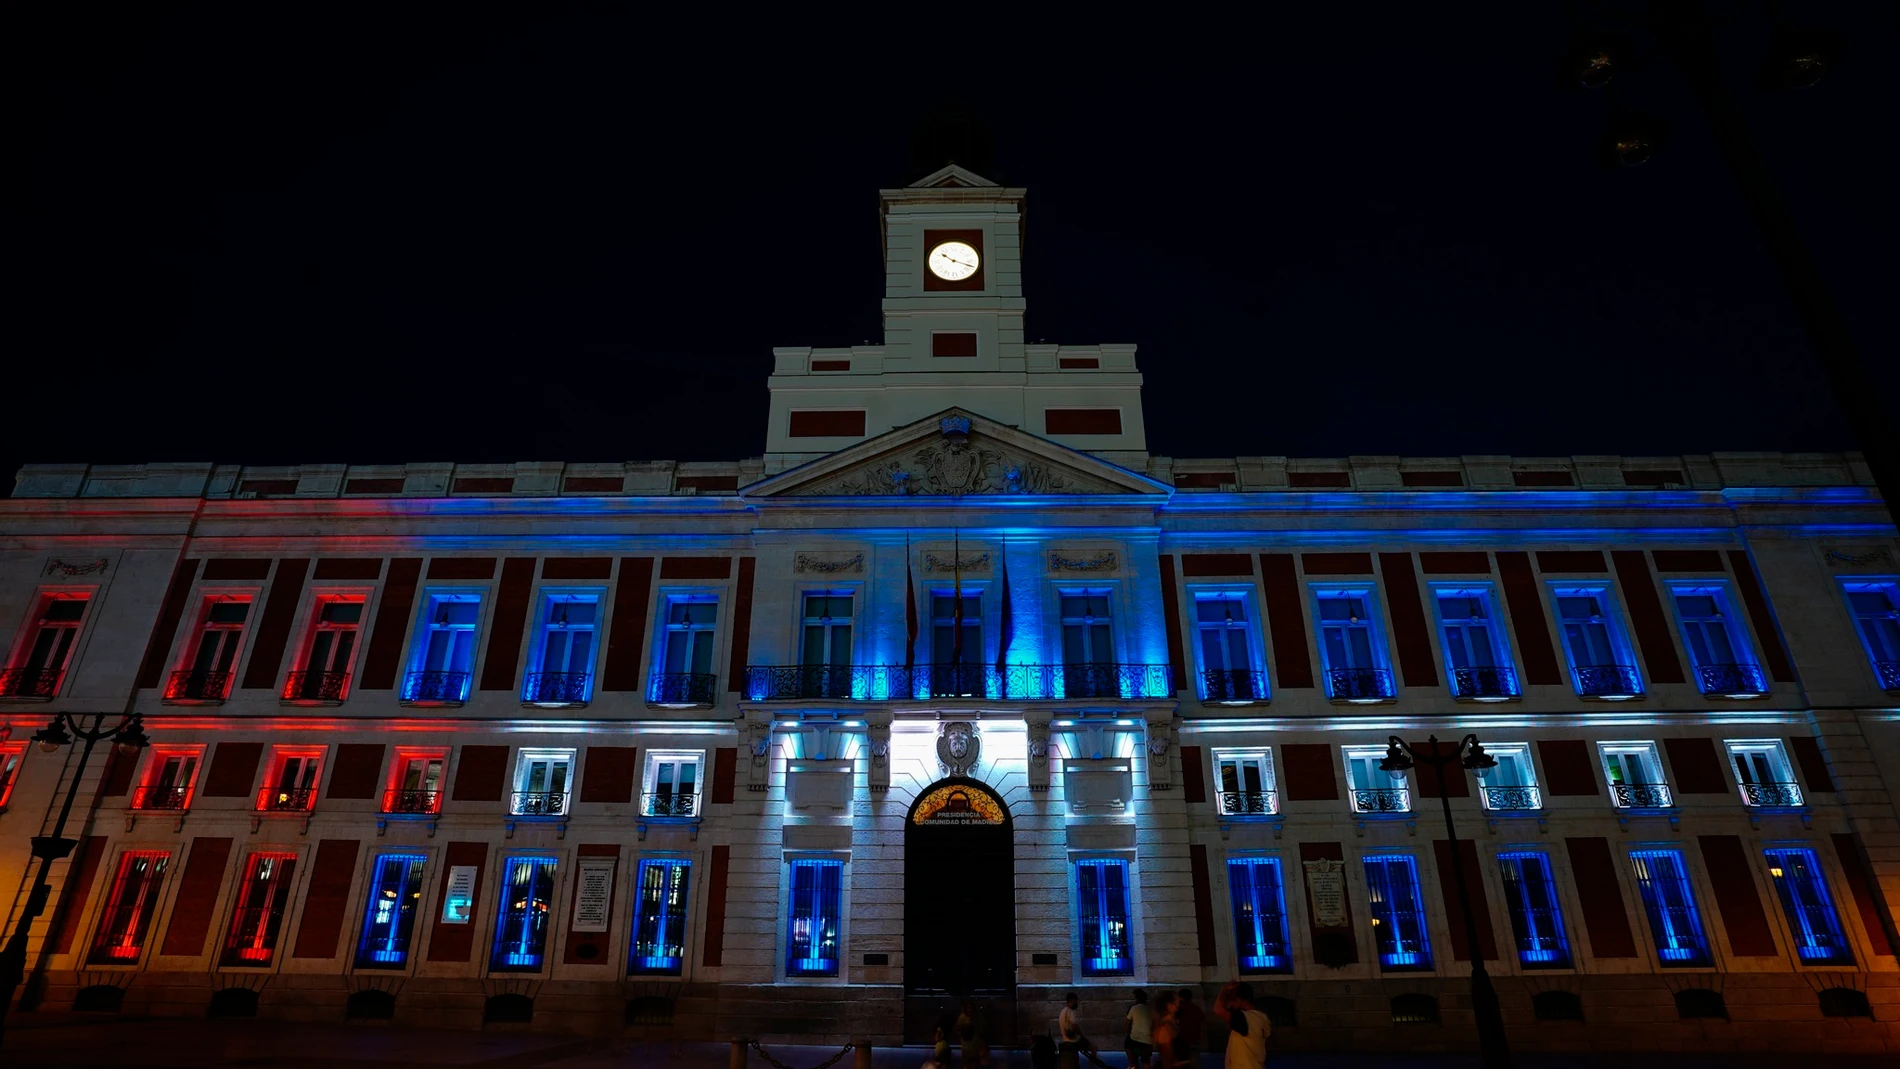 -FOTODELDIA- MADRID, 14/07/2021.- La Real Casa de Correos, sede del gobierno de la Comunidad de Madrid, iluminada hoy miércoles con los colores de la bandera de Cuba. EFE/Comunidad de Madrid. ***SOLO USO EDITORAL / SOLO USO DISPONIBLE PARA ILUSTRAR LA NOTICIA QUE ACOMPAÑA/ CRÉDITO OBLIGATORIO***.